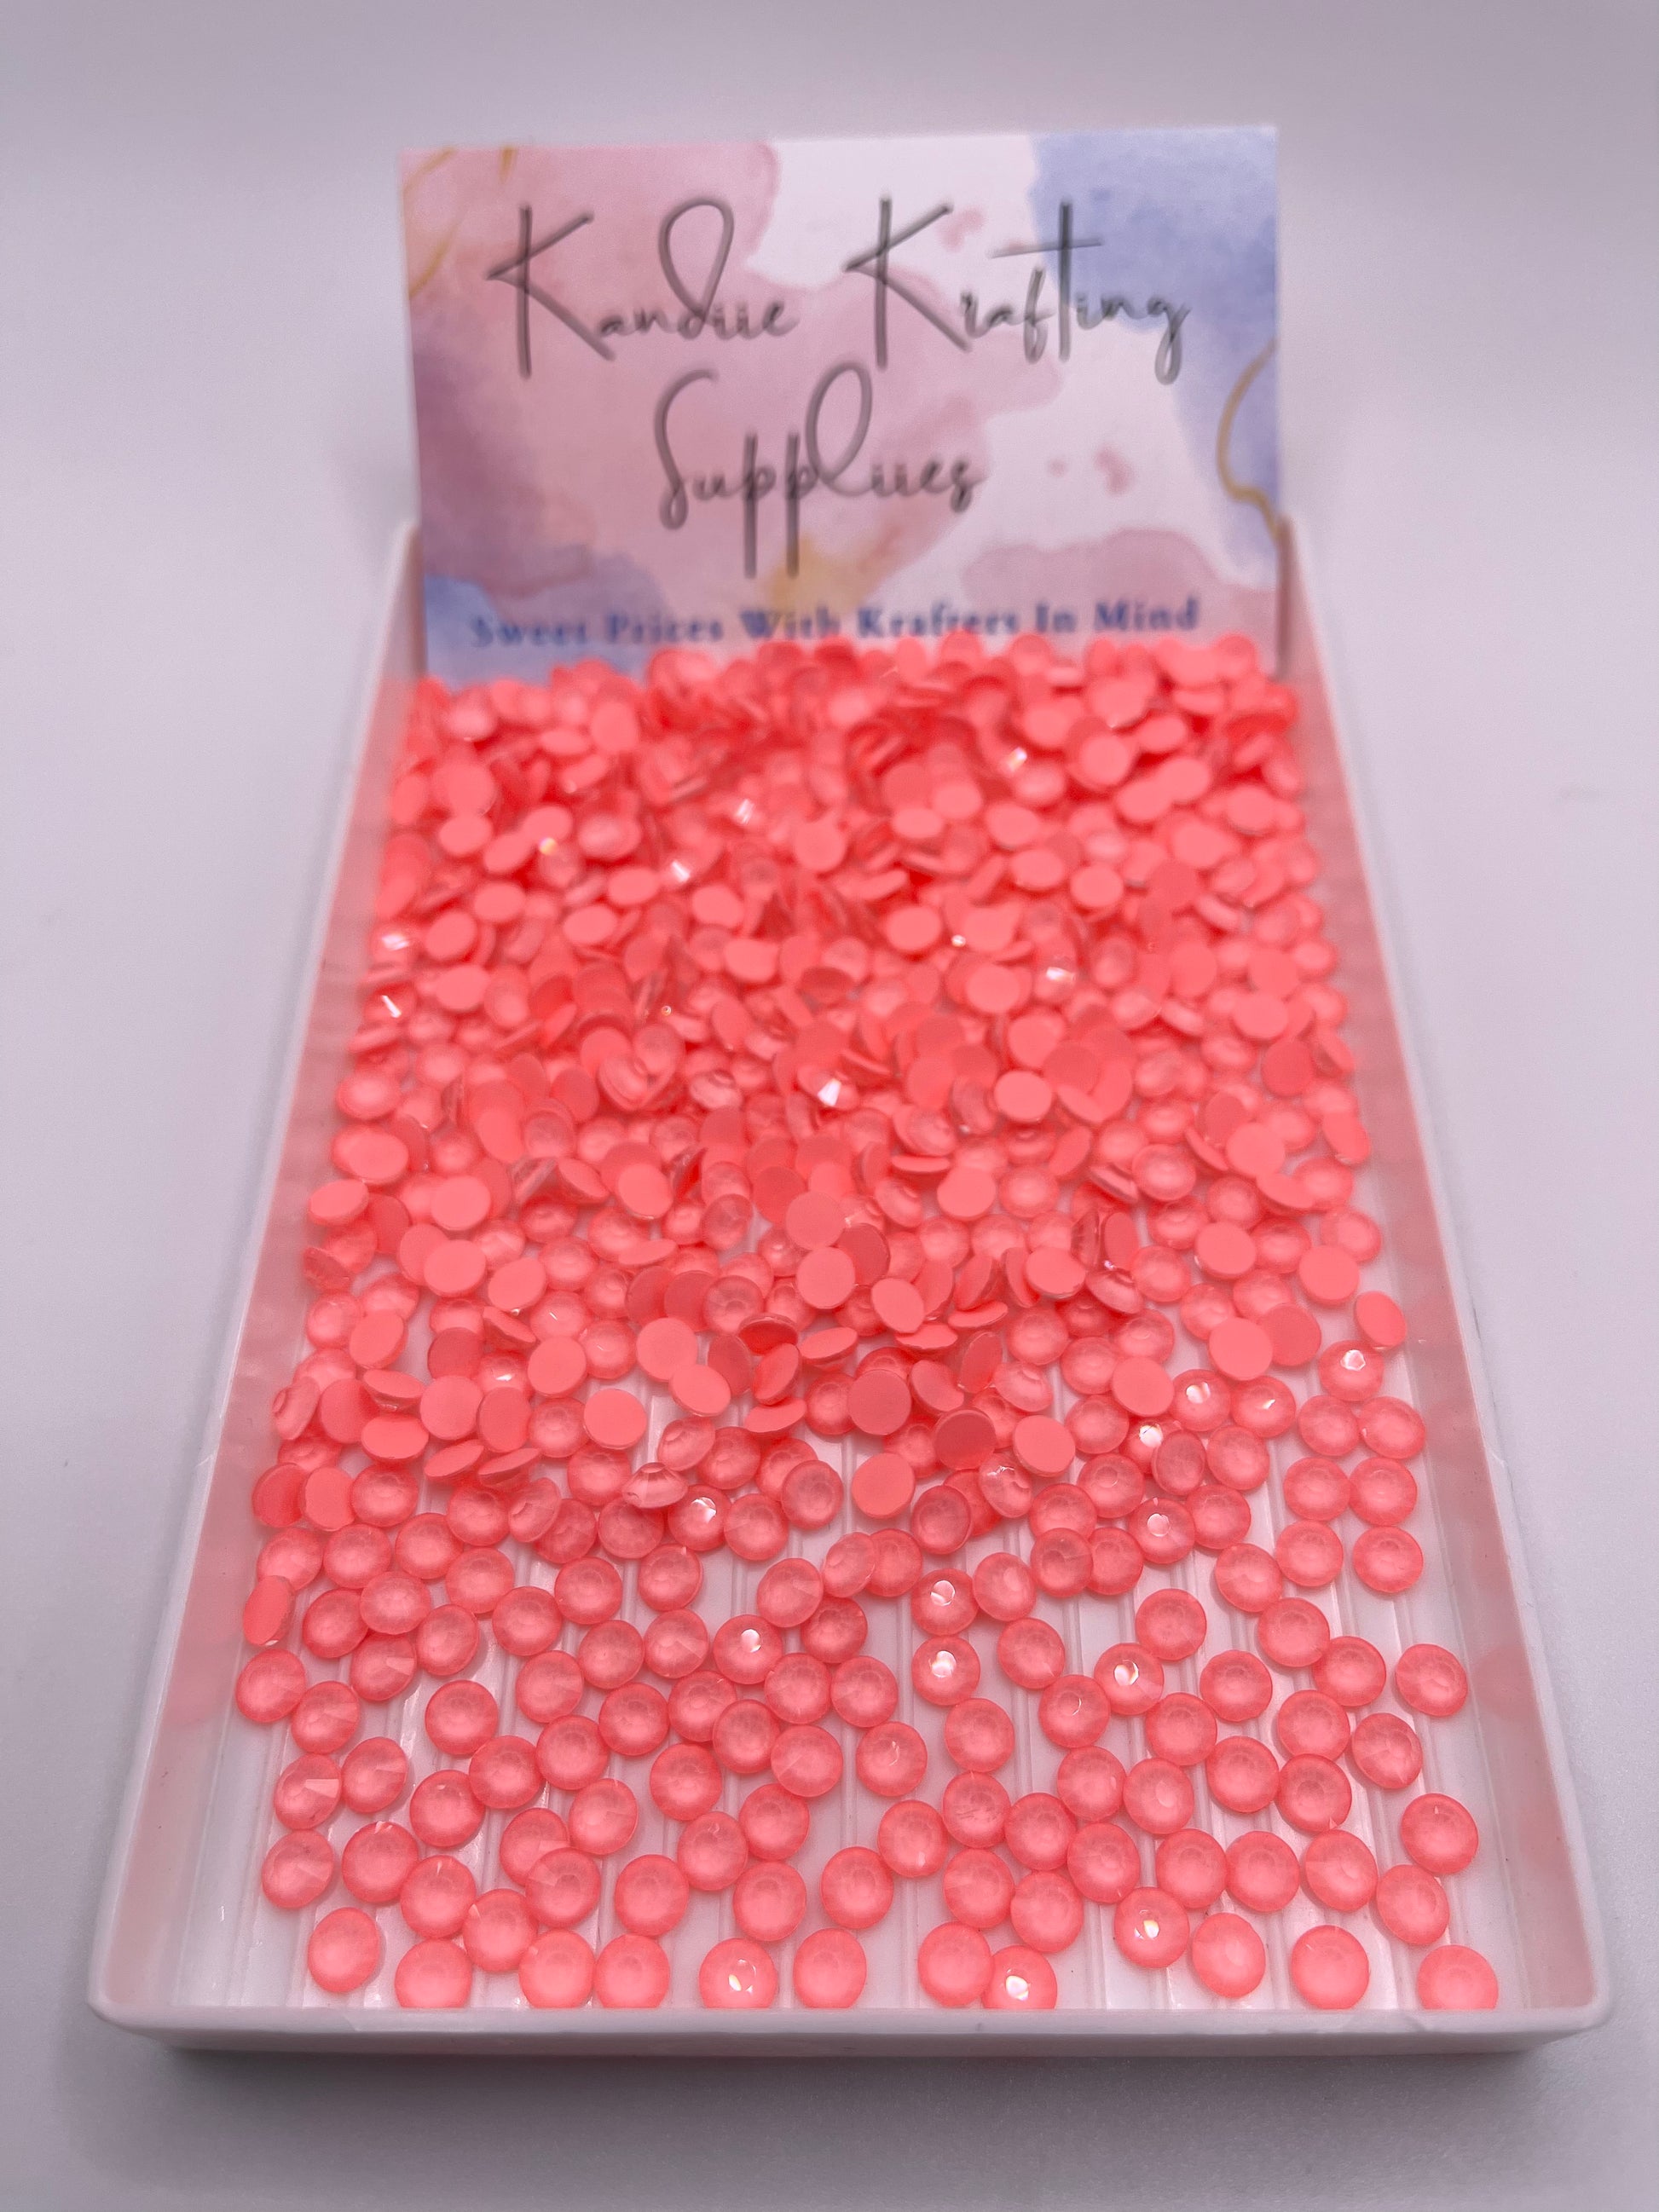 Coral Neon Glass Rhinestones – Kandiie Krafting Suppliies